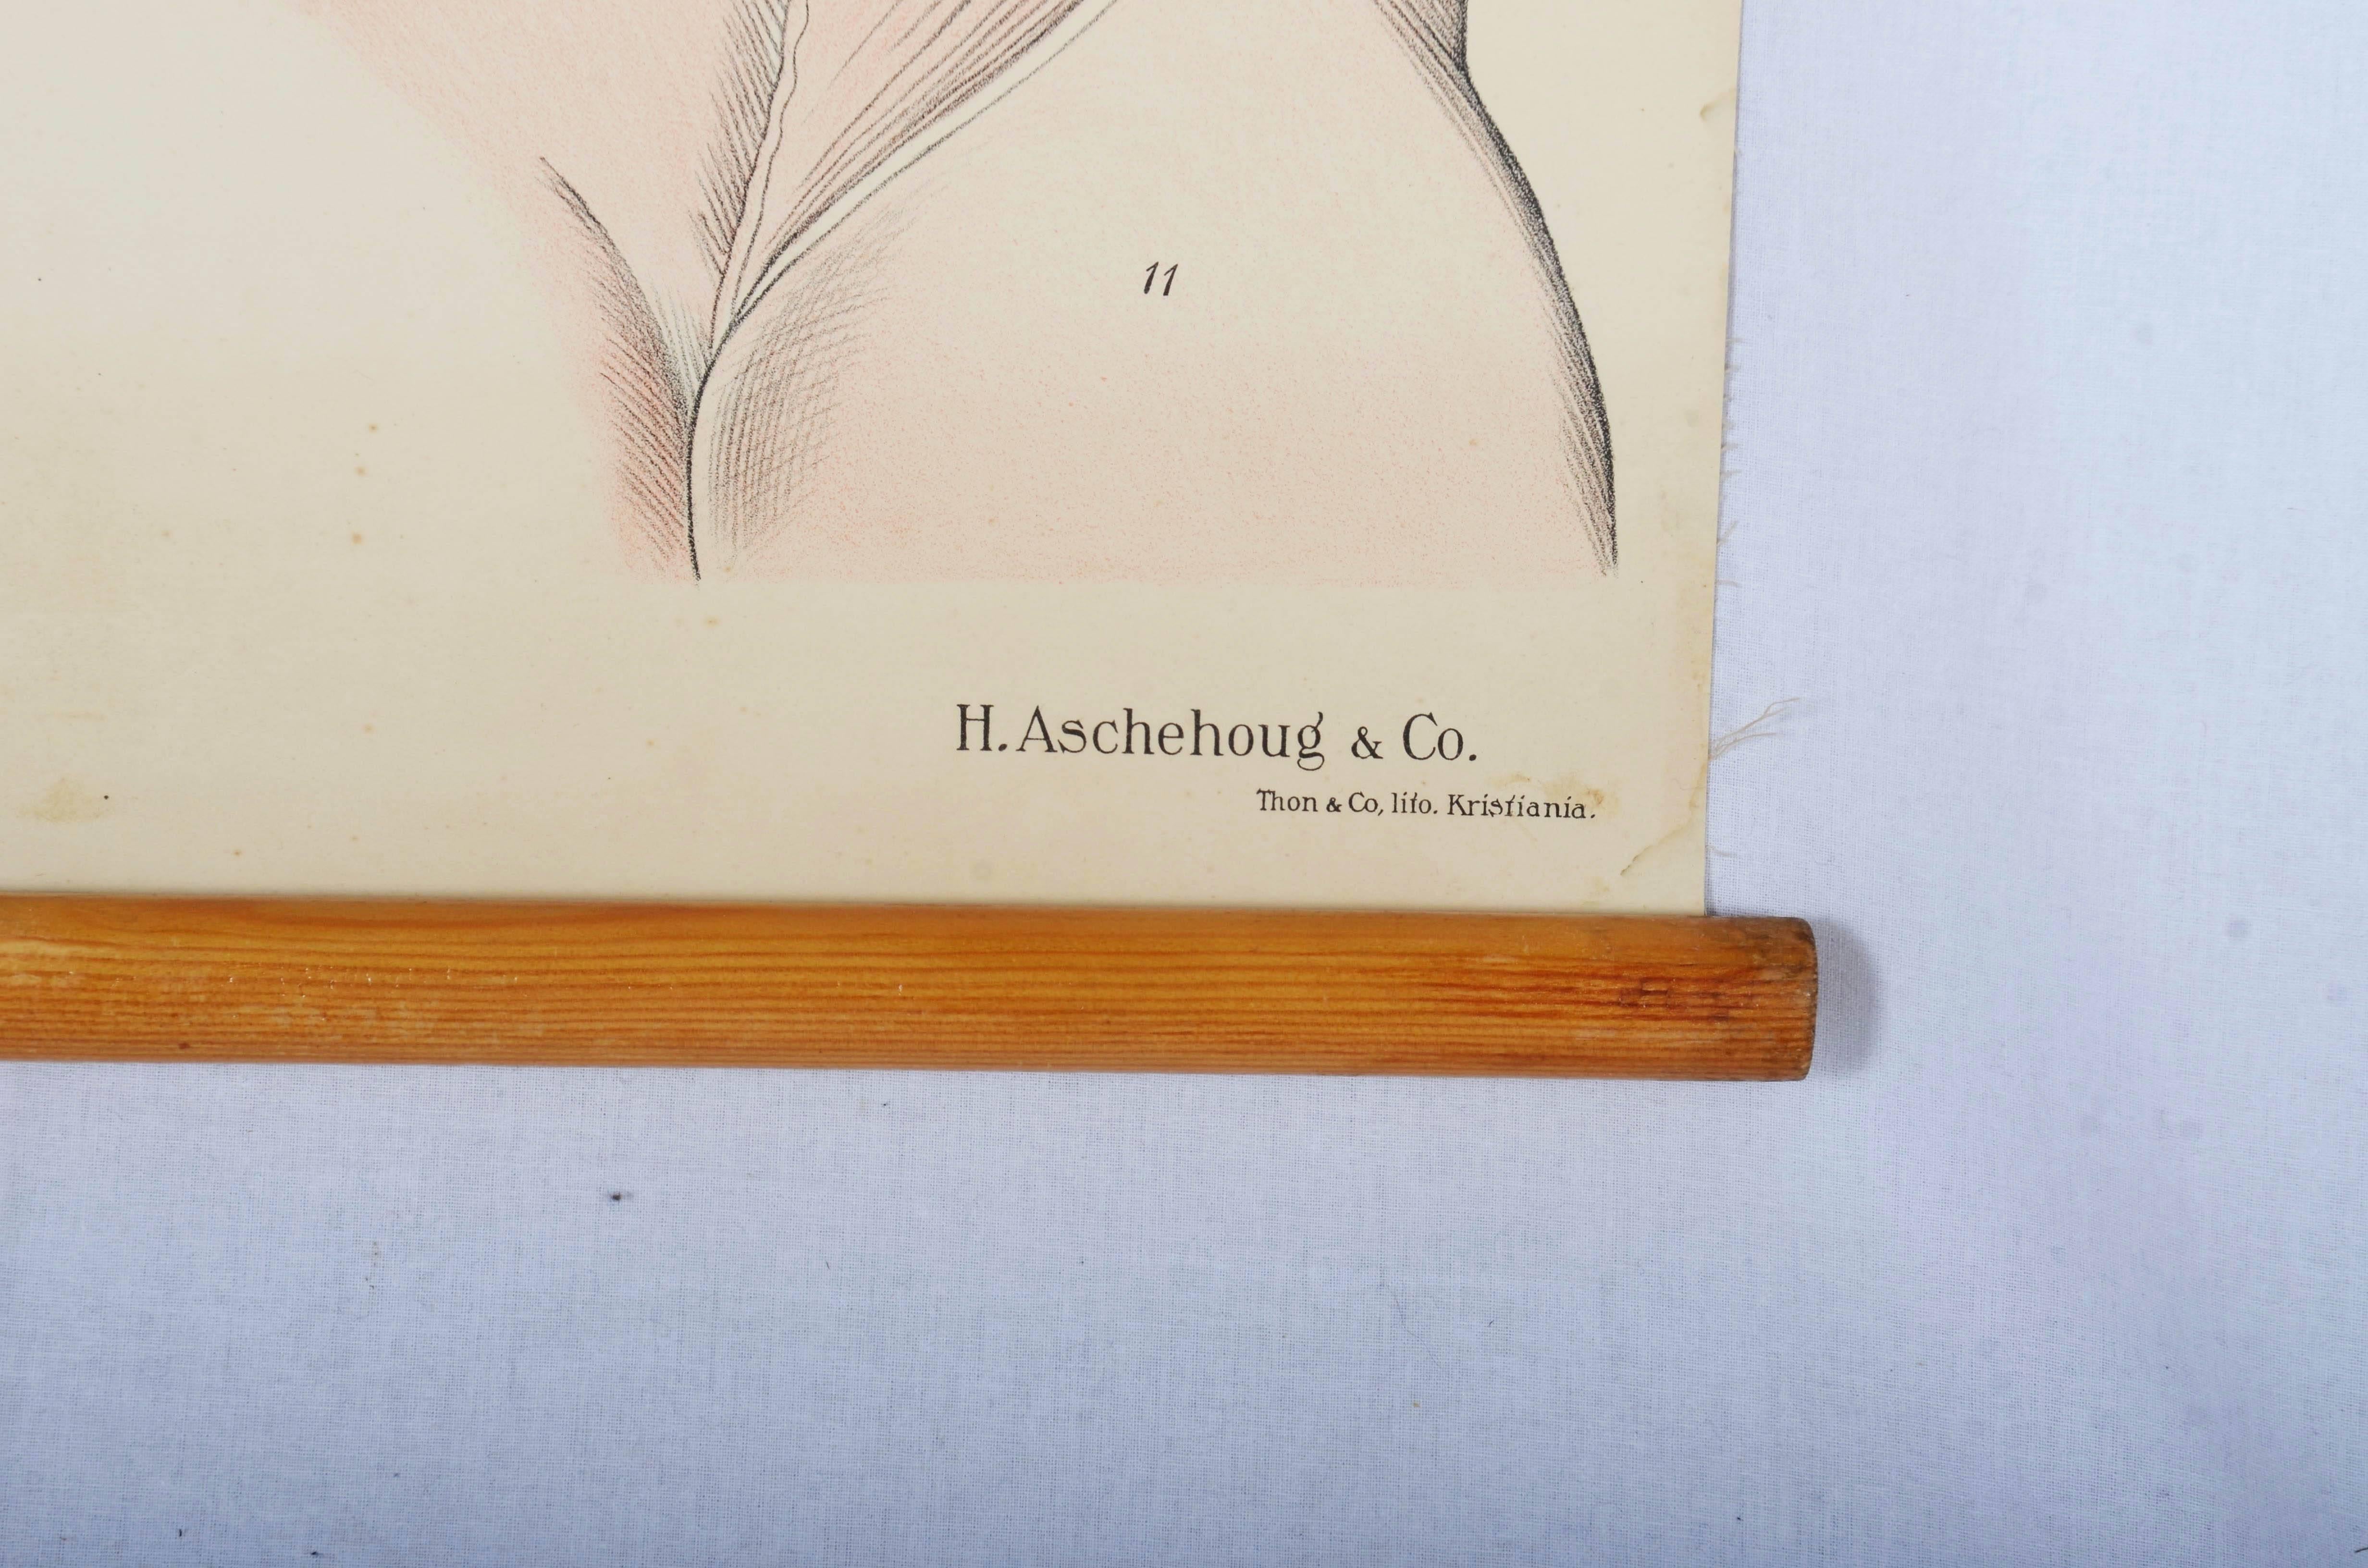 Wandtafel mit der Darstellung des menschlichen Muskelsystems. 
Wahrscheinlich aus den 1950er Jahren.
Bunter Druck auf Papier.
Guter Originalzustand, altersbedingte Gebrauchsspuren.